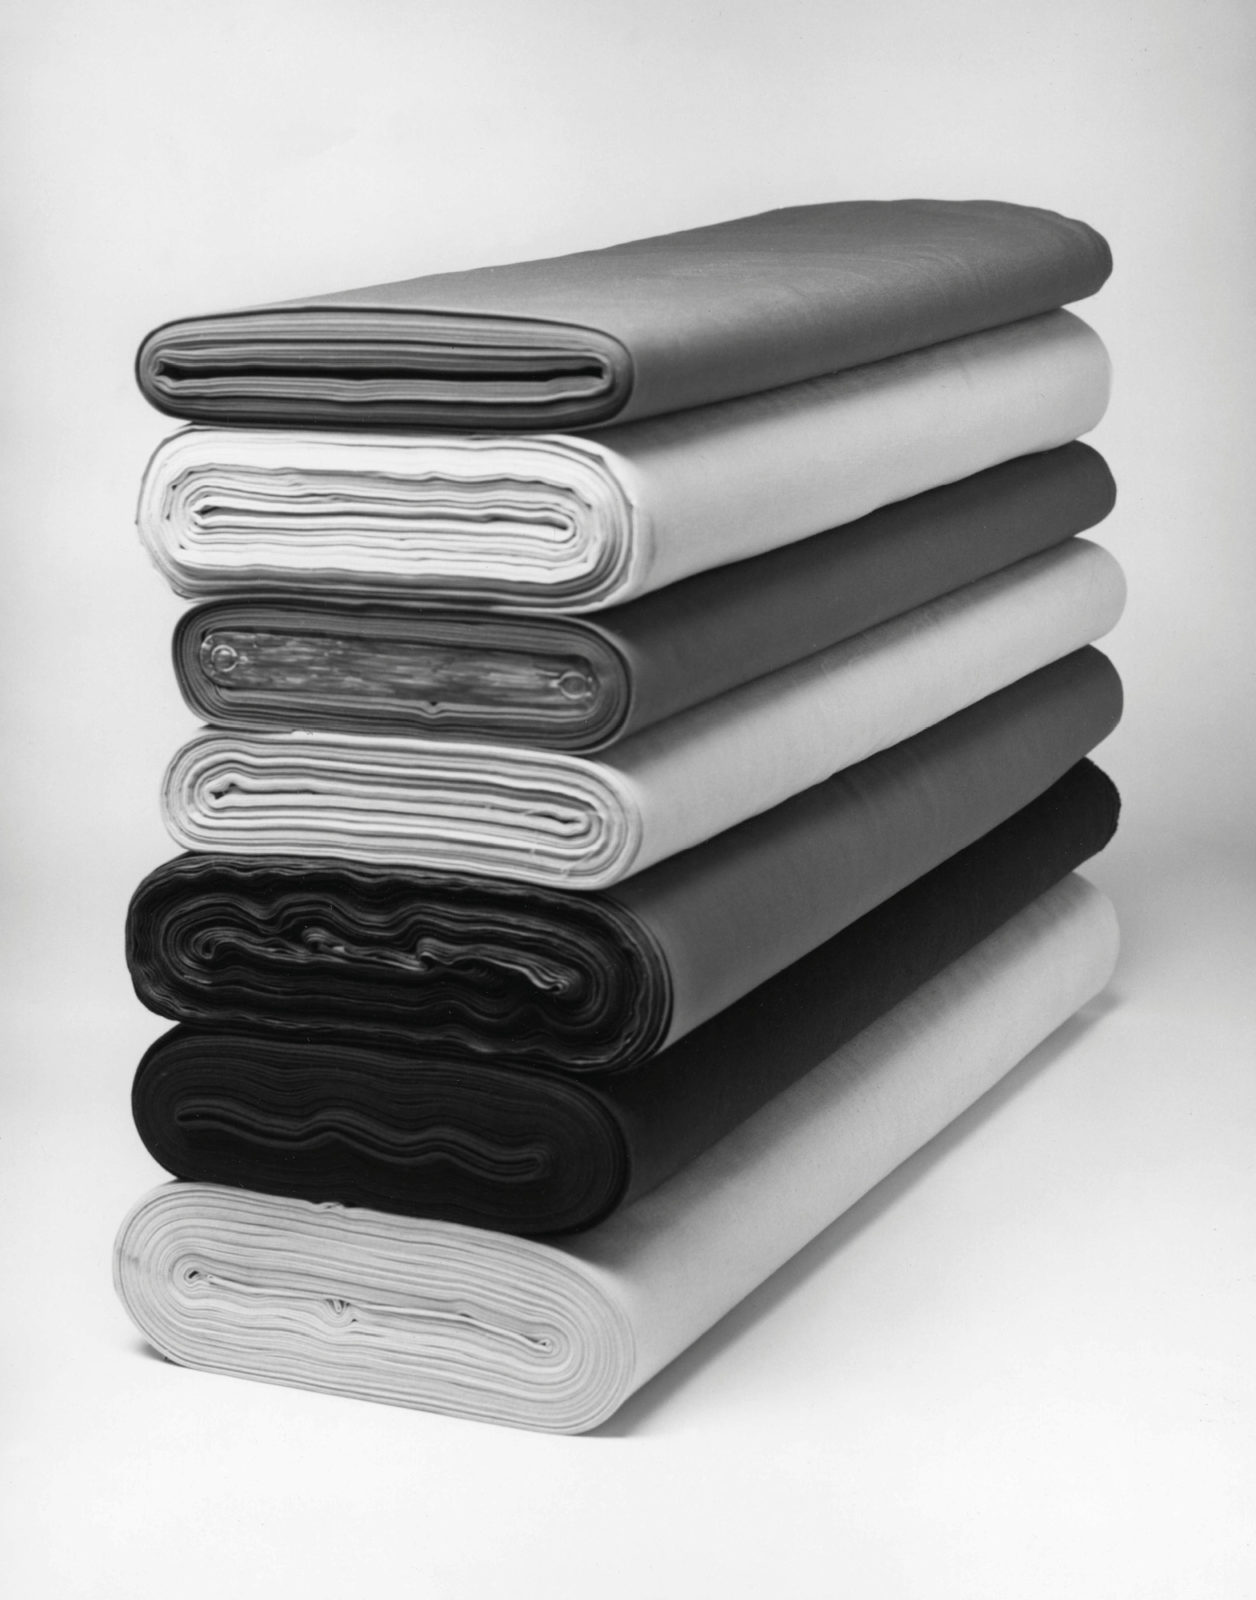 Sept rouleaux de tissu gris et noir, empilés les uns sur les autres.